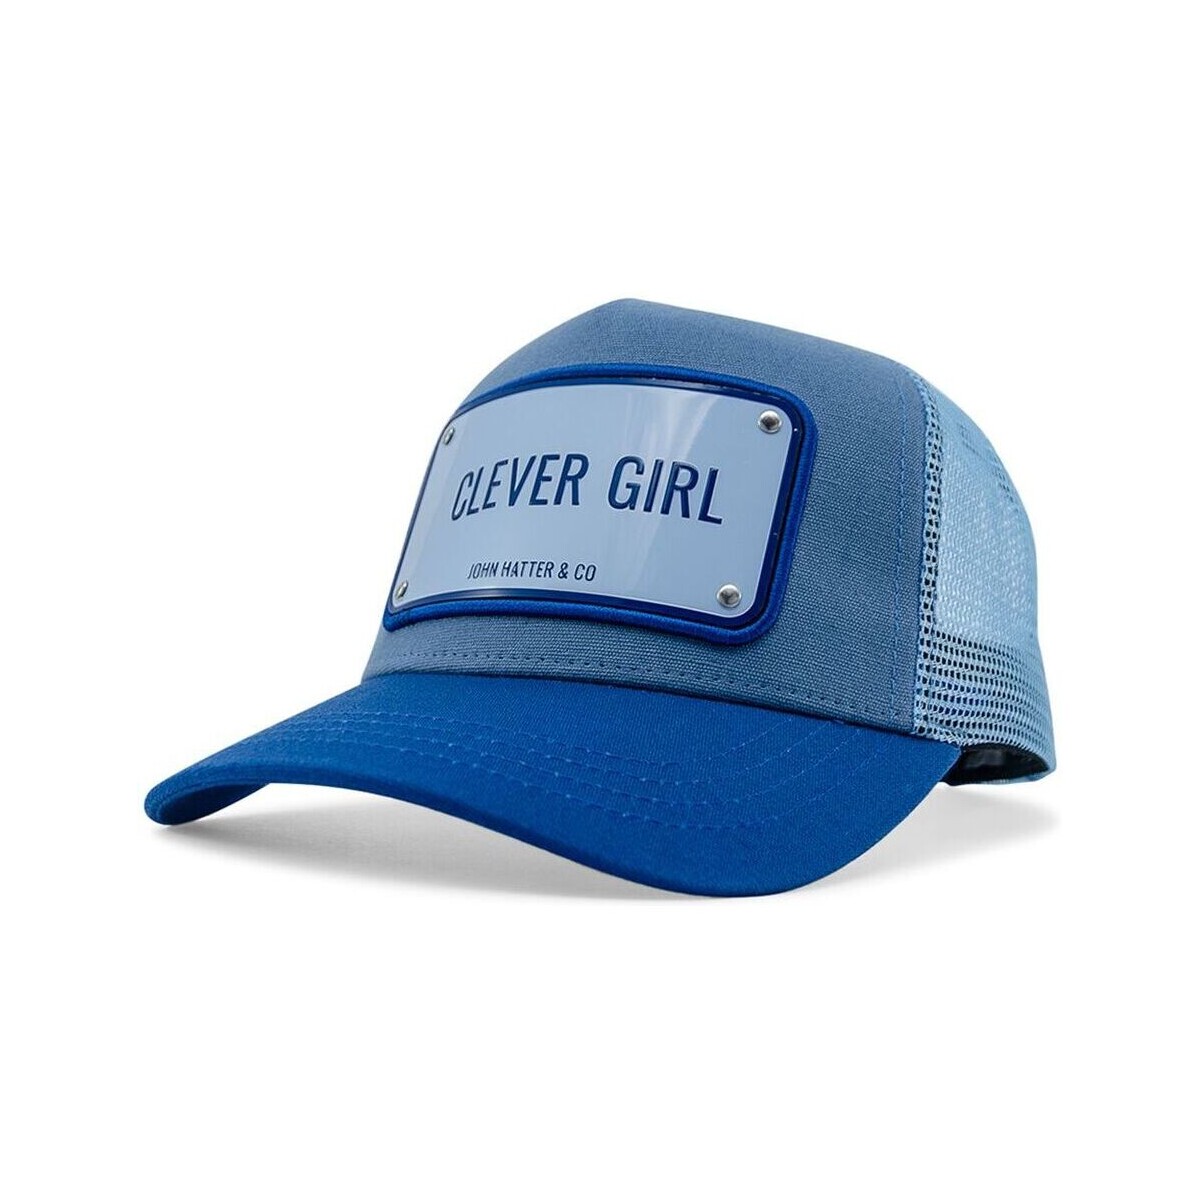 Textil kiegészítők Női Baseball sapkák John Hatter & Co Clever Girl Kék